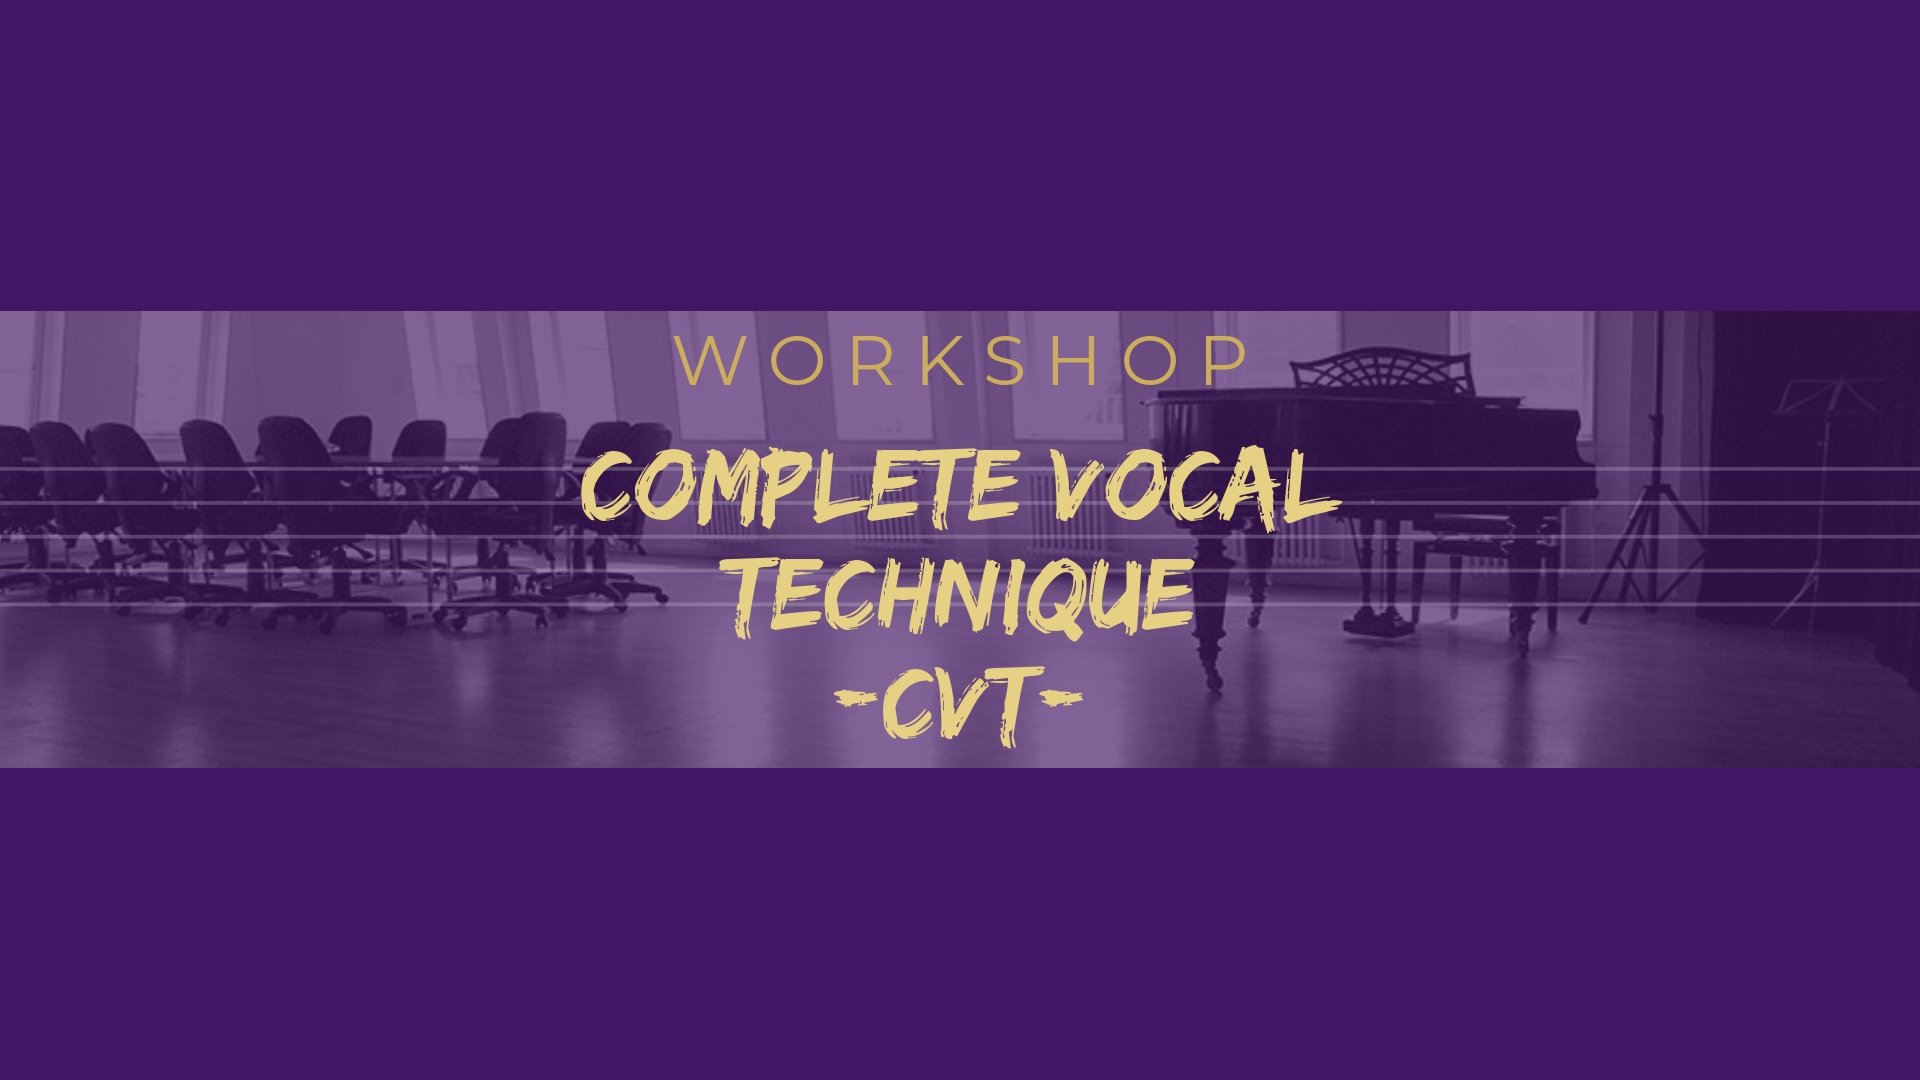 Workshop Complete Vocal Technique (CVT)